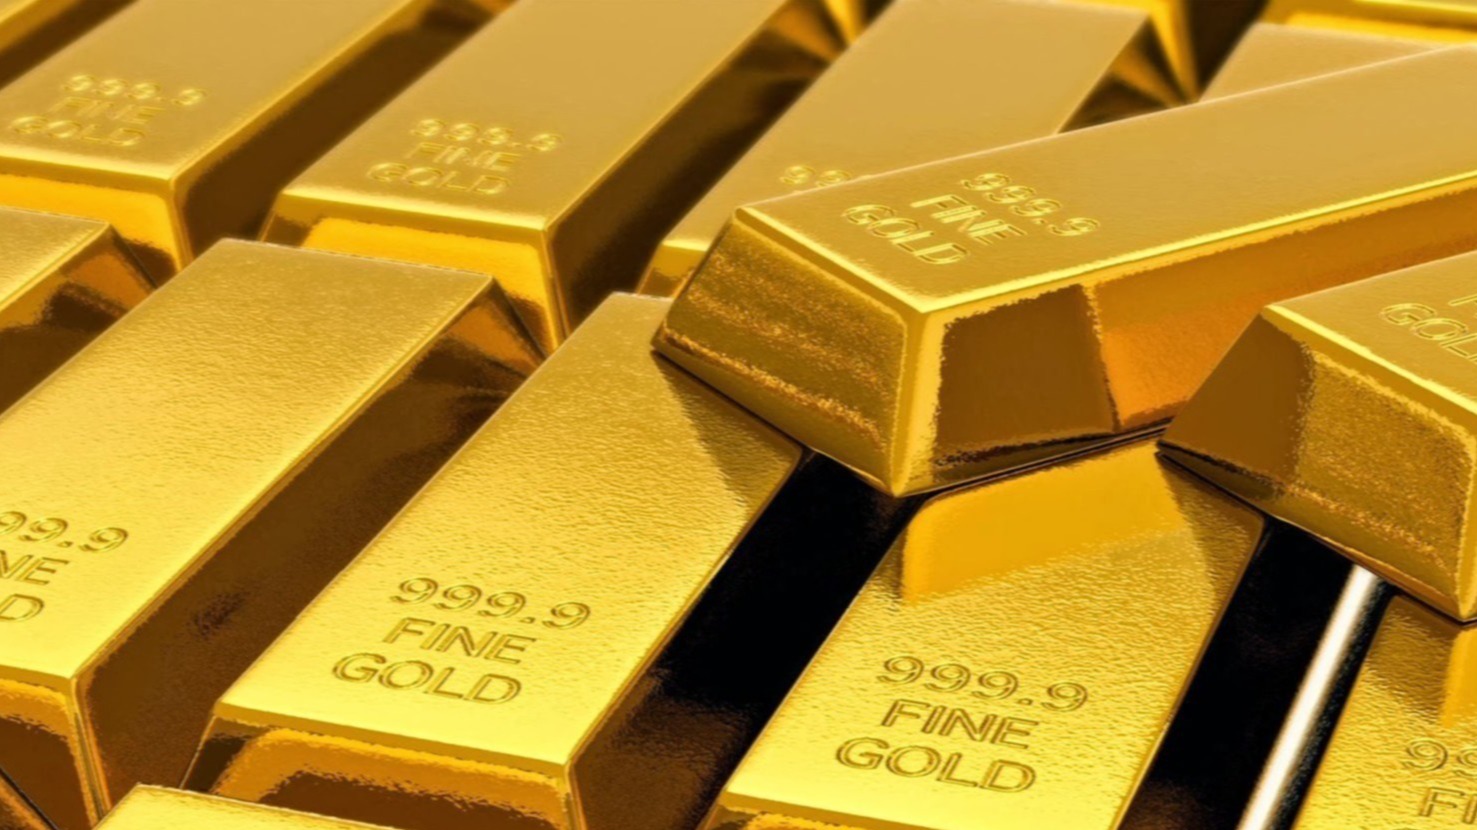 GOLD Purity सोने की शुद्धता को कैसे पहचाना जाता है ?